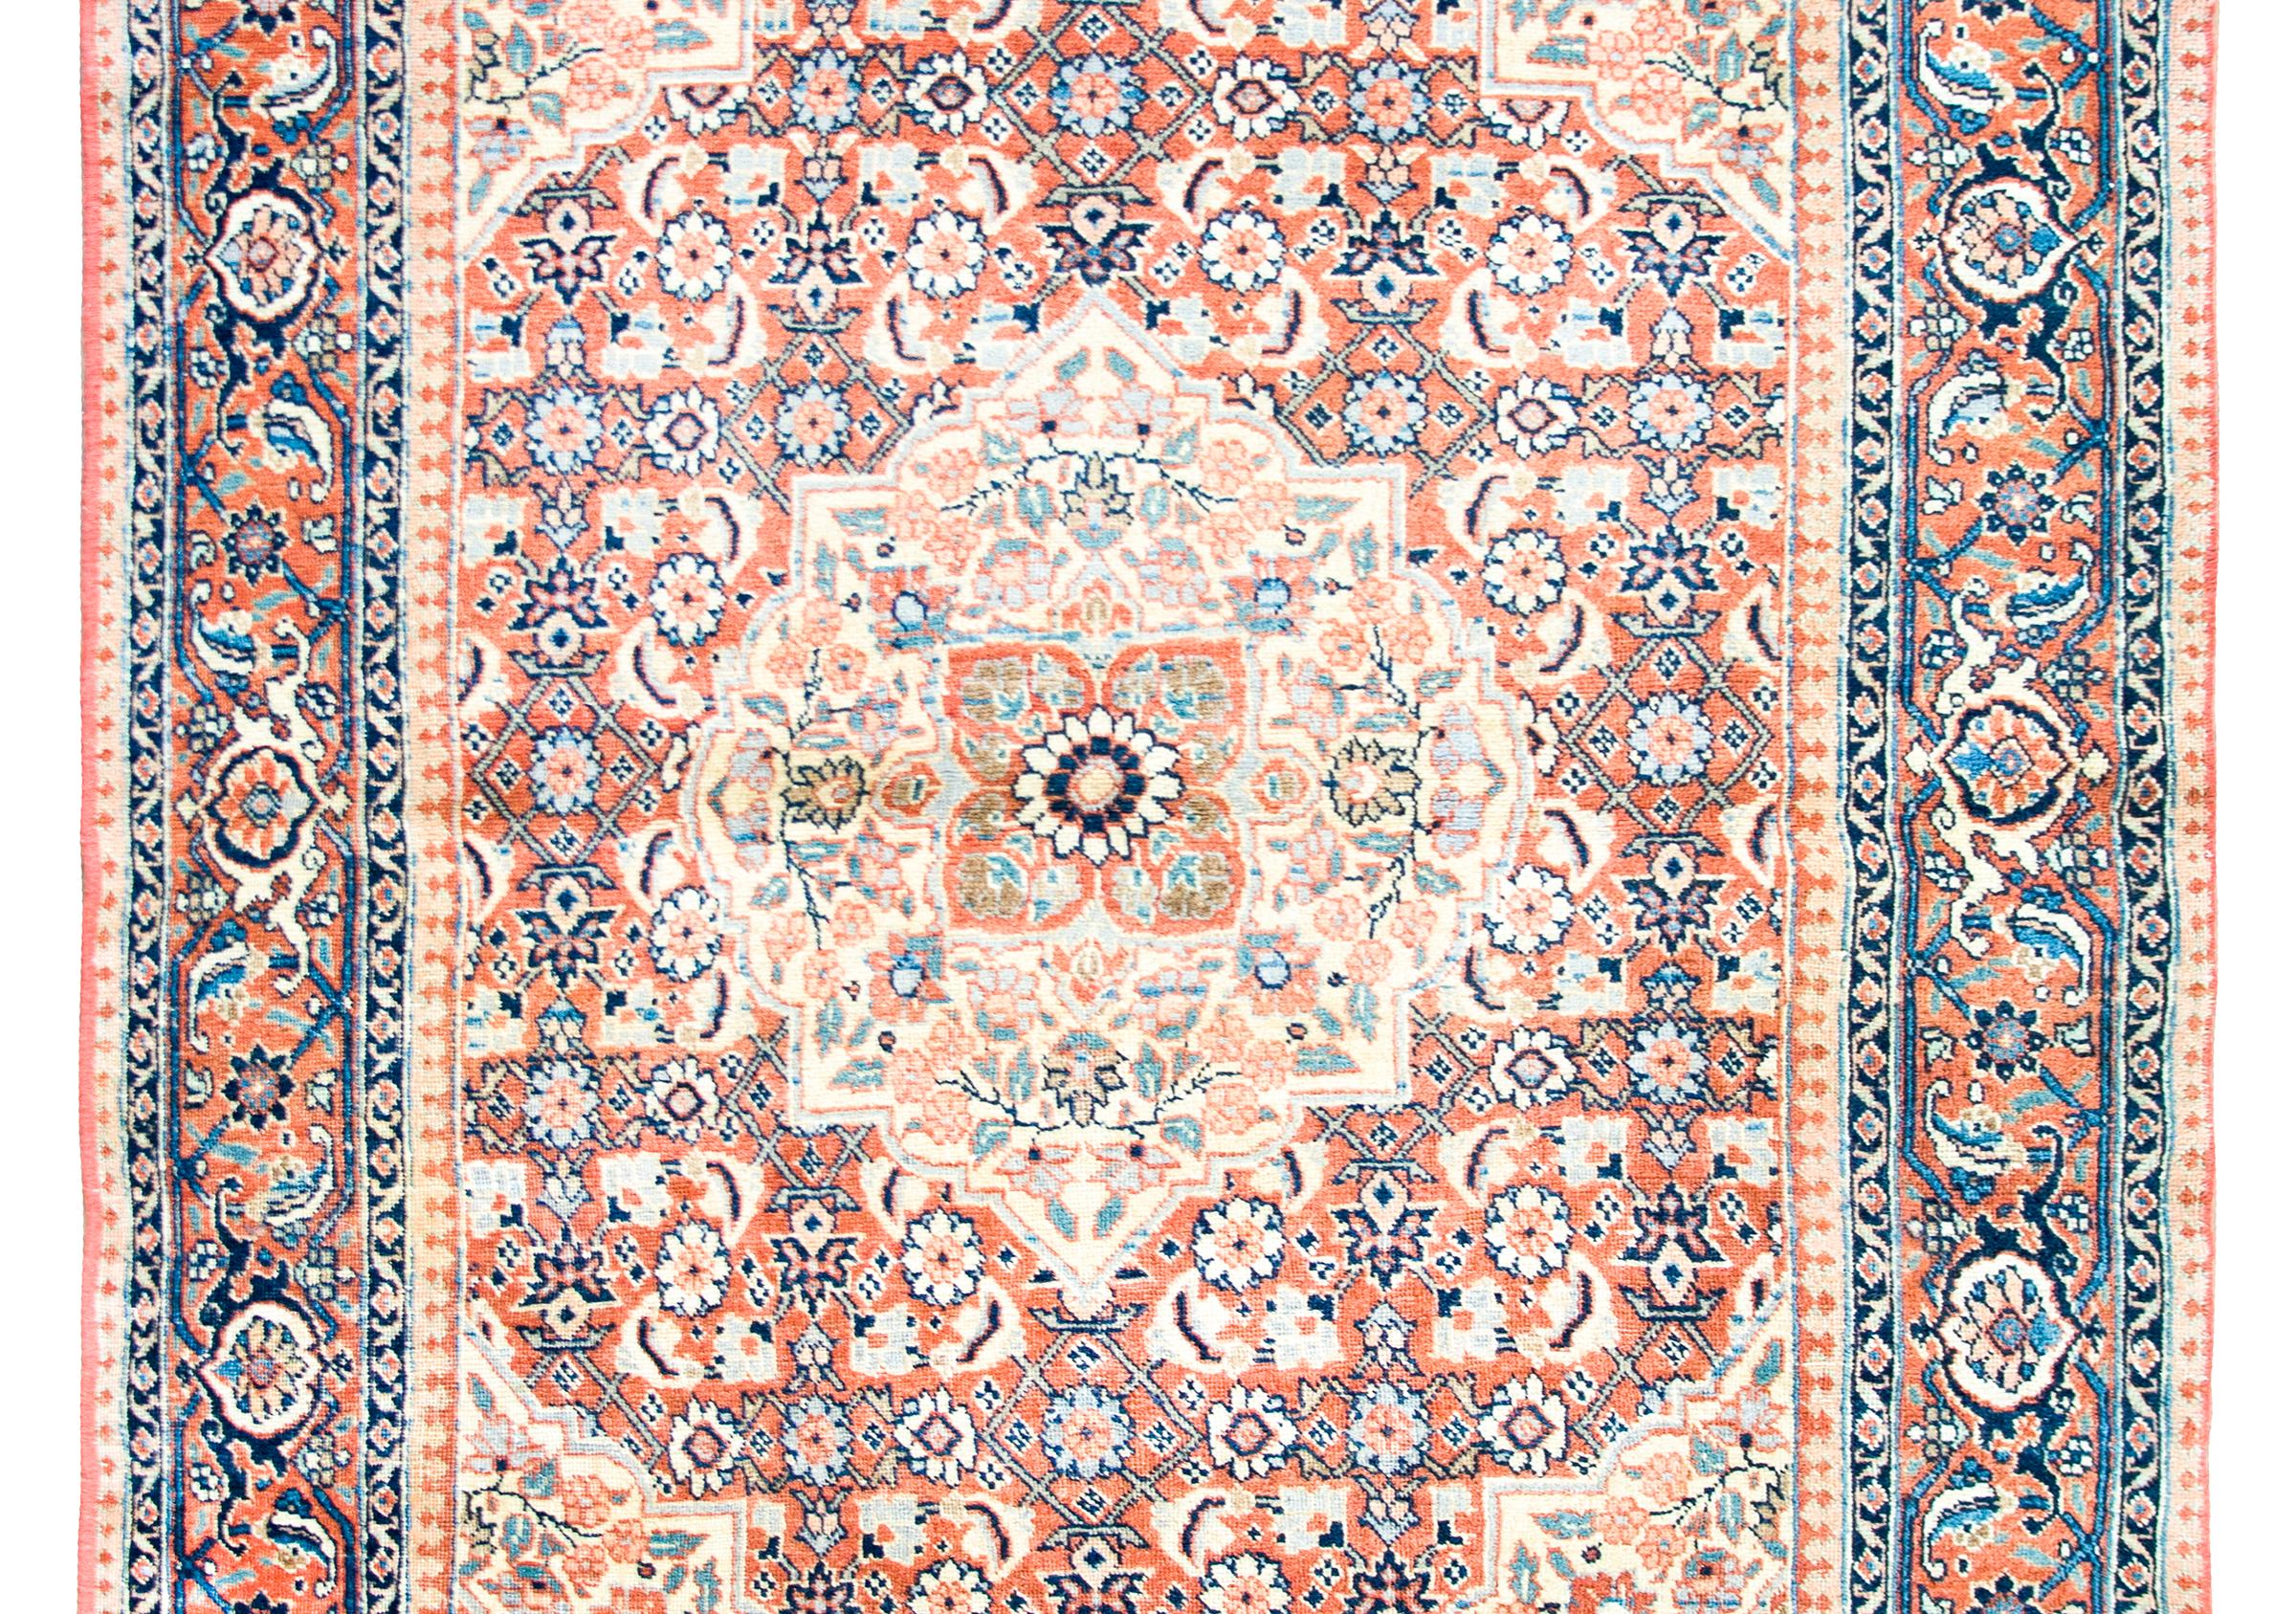 Ein schöner persischer Täbriz-Teppich aus dem frühen 20. Jahrhundert mit einem kleinen zentralen Blumenmedaillon, das inmitten mehrerer Medaillons mit jeweils einzigartigen, sich wiederholenden Blumenmustern lebt und von einer komplexen Bordüre mit